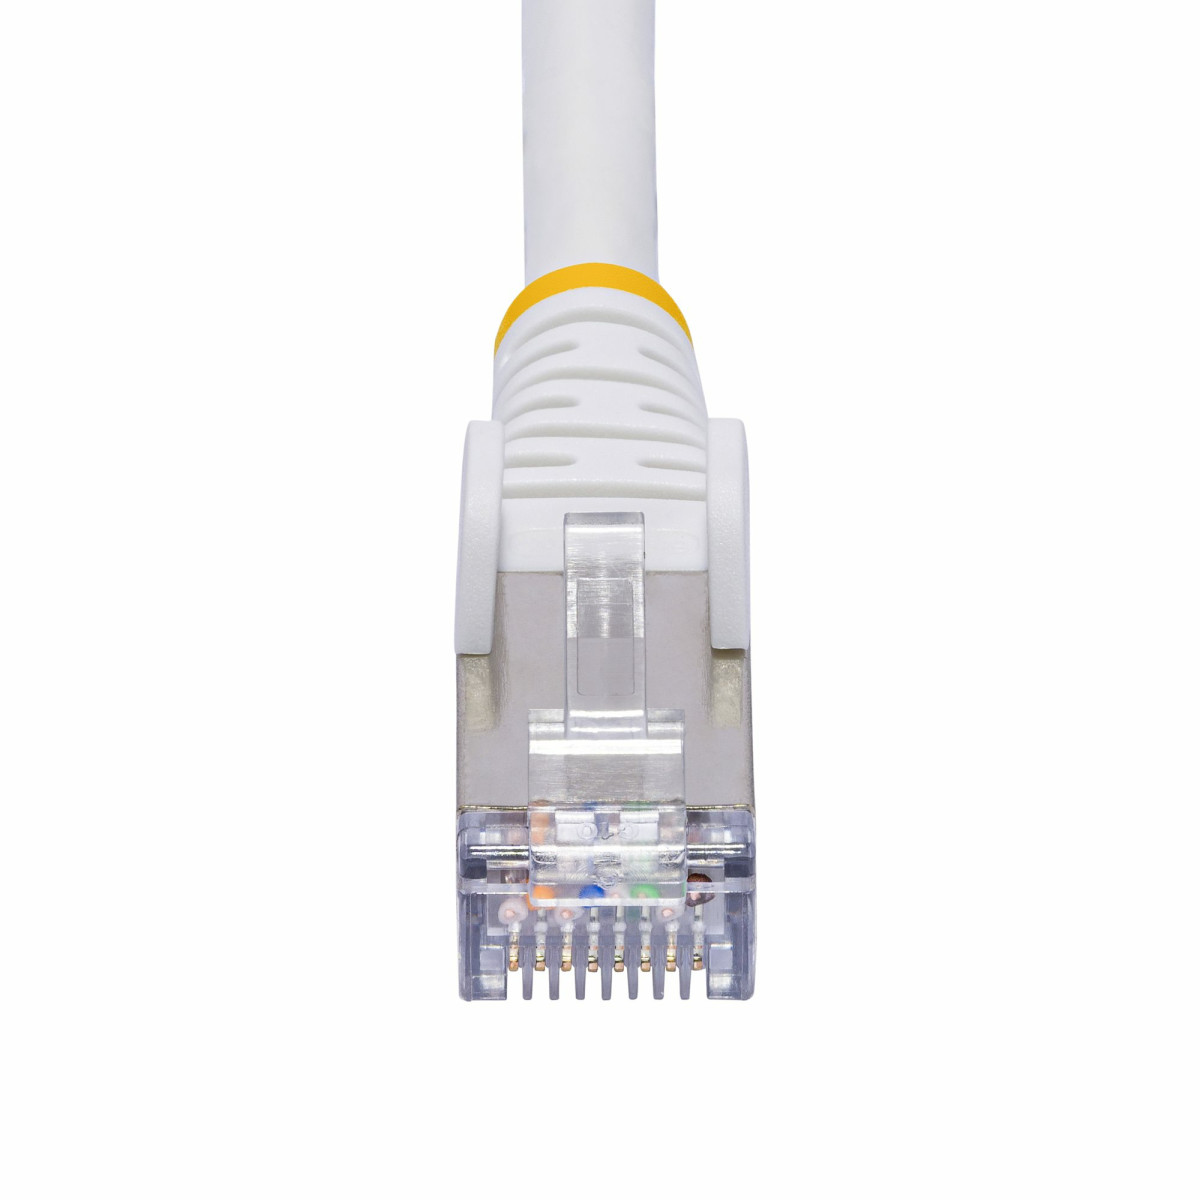 10m White CAT8 Ethernet Cable - LSZH